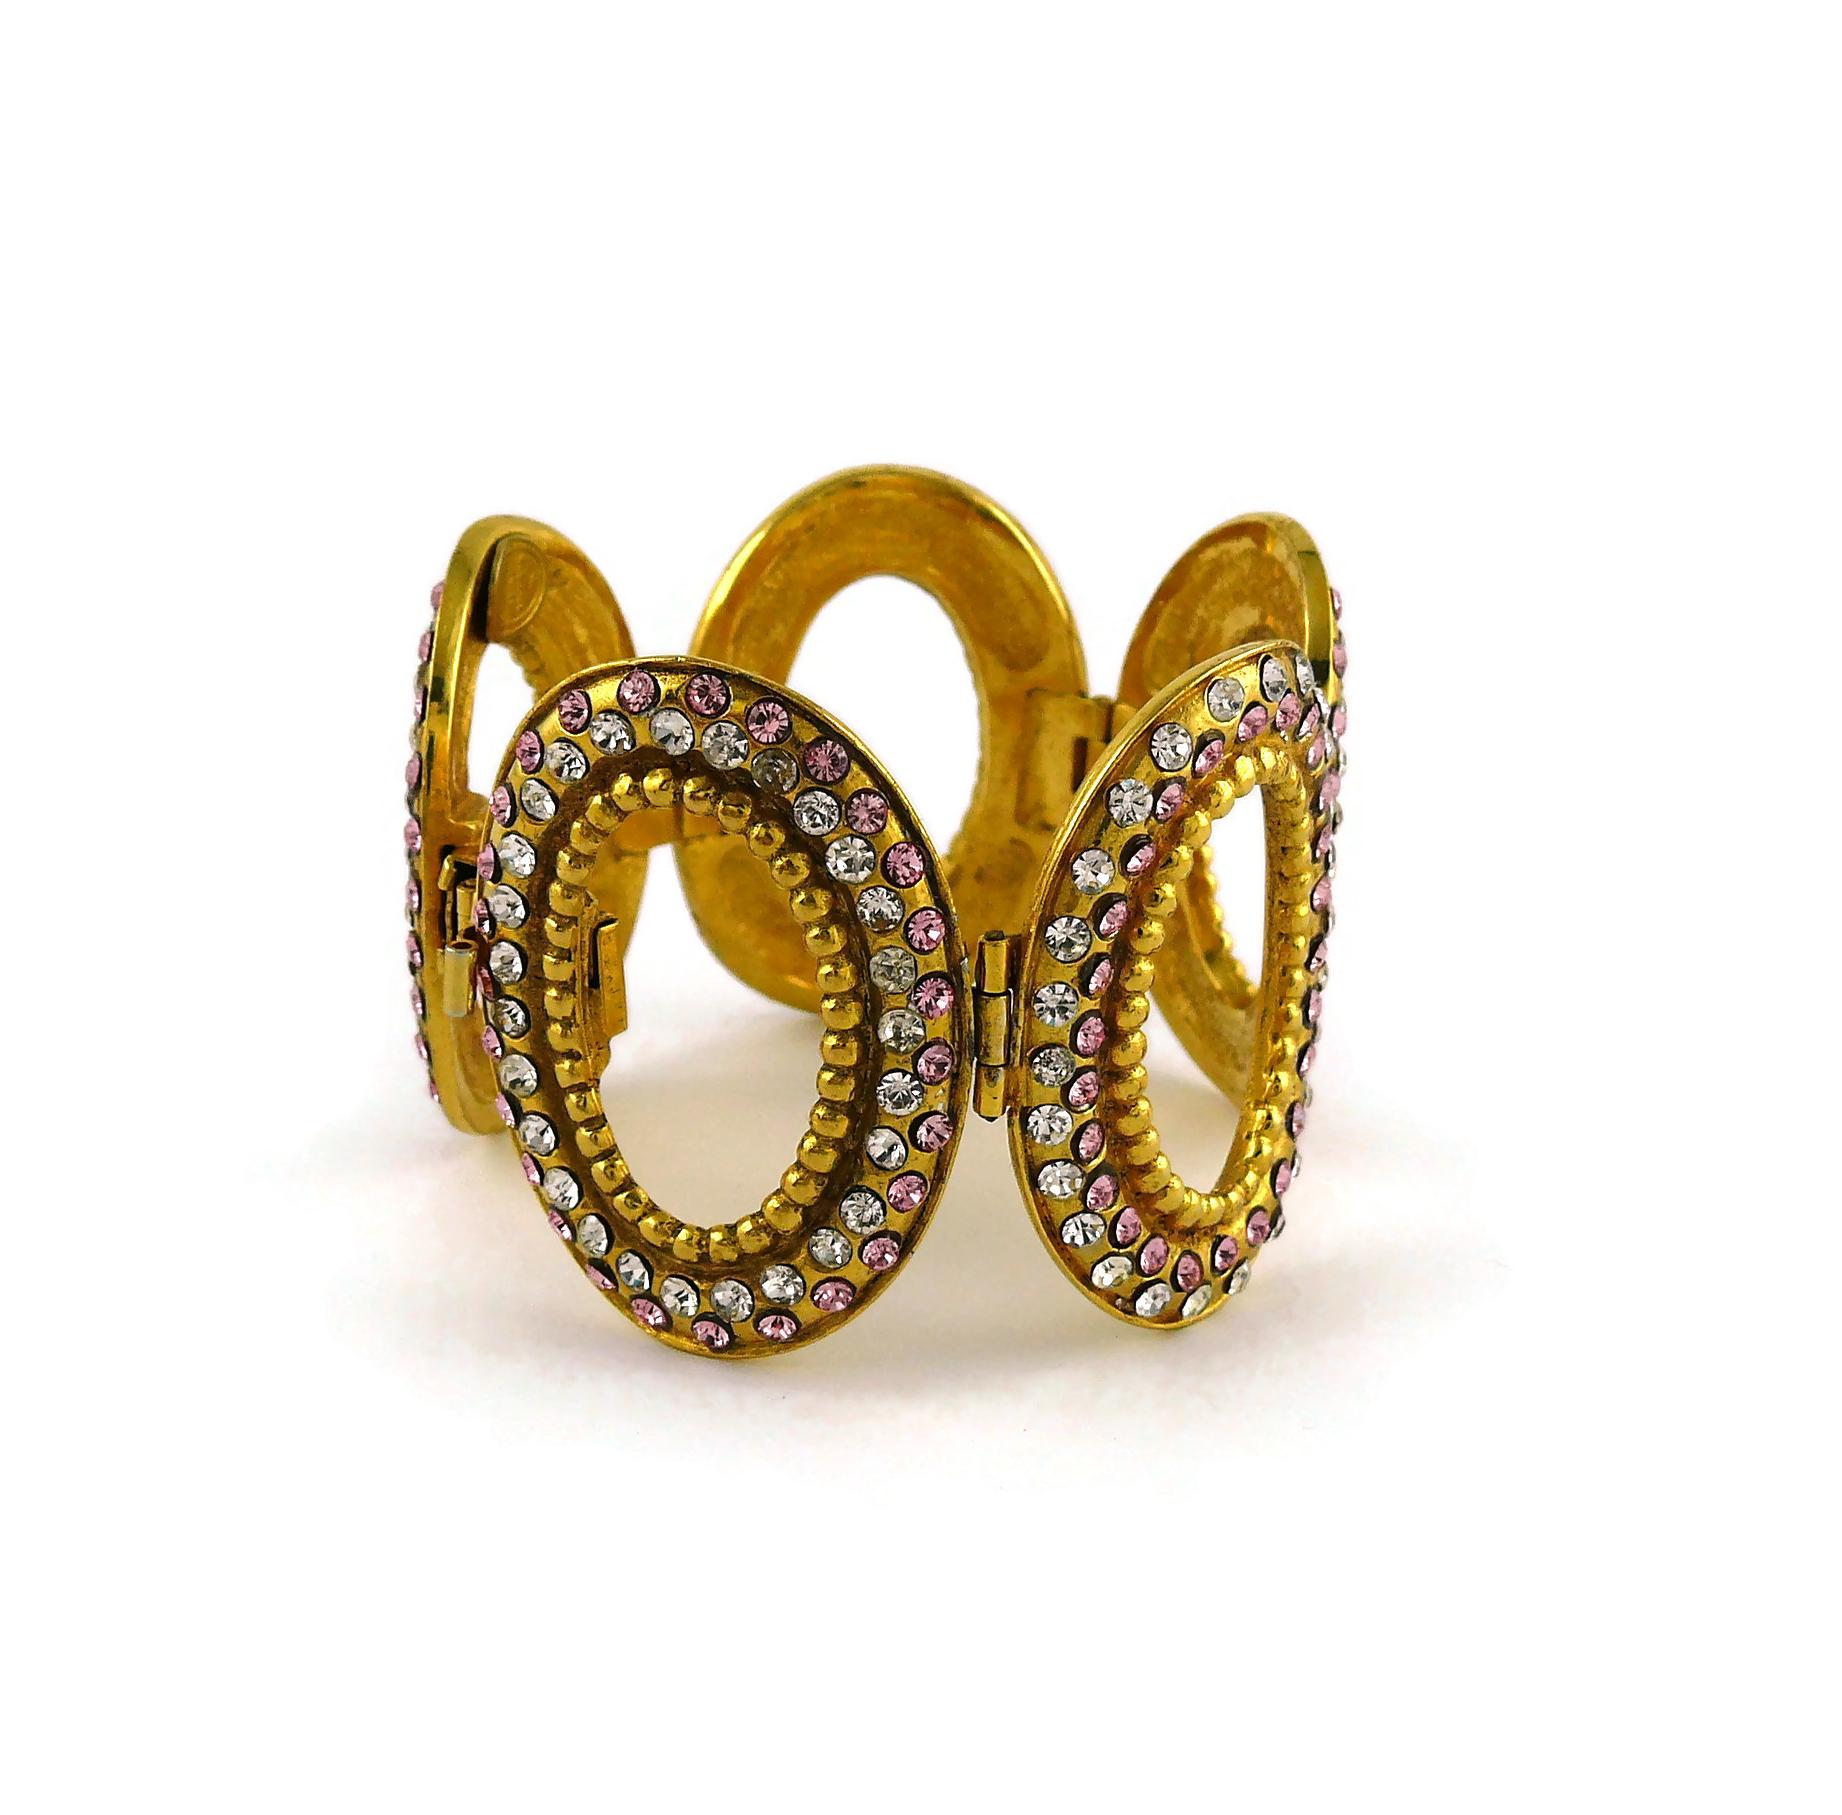 Women's Christian Dior Boutique Vintage Jeweled Oval Link Bracelet